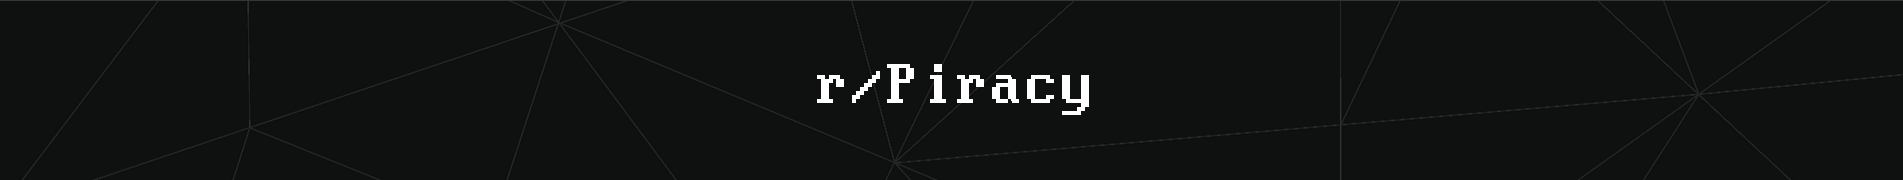 Reddit-Piracy-Megathread/ at master · magicoflolis/Reddit-Piracy-Megathread  · GitHub